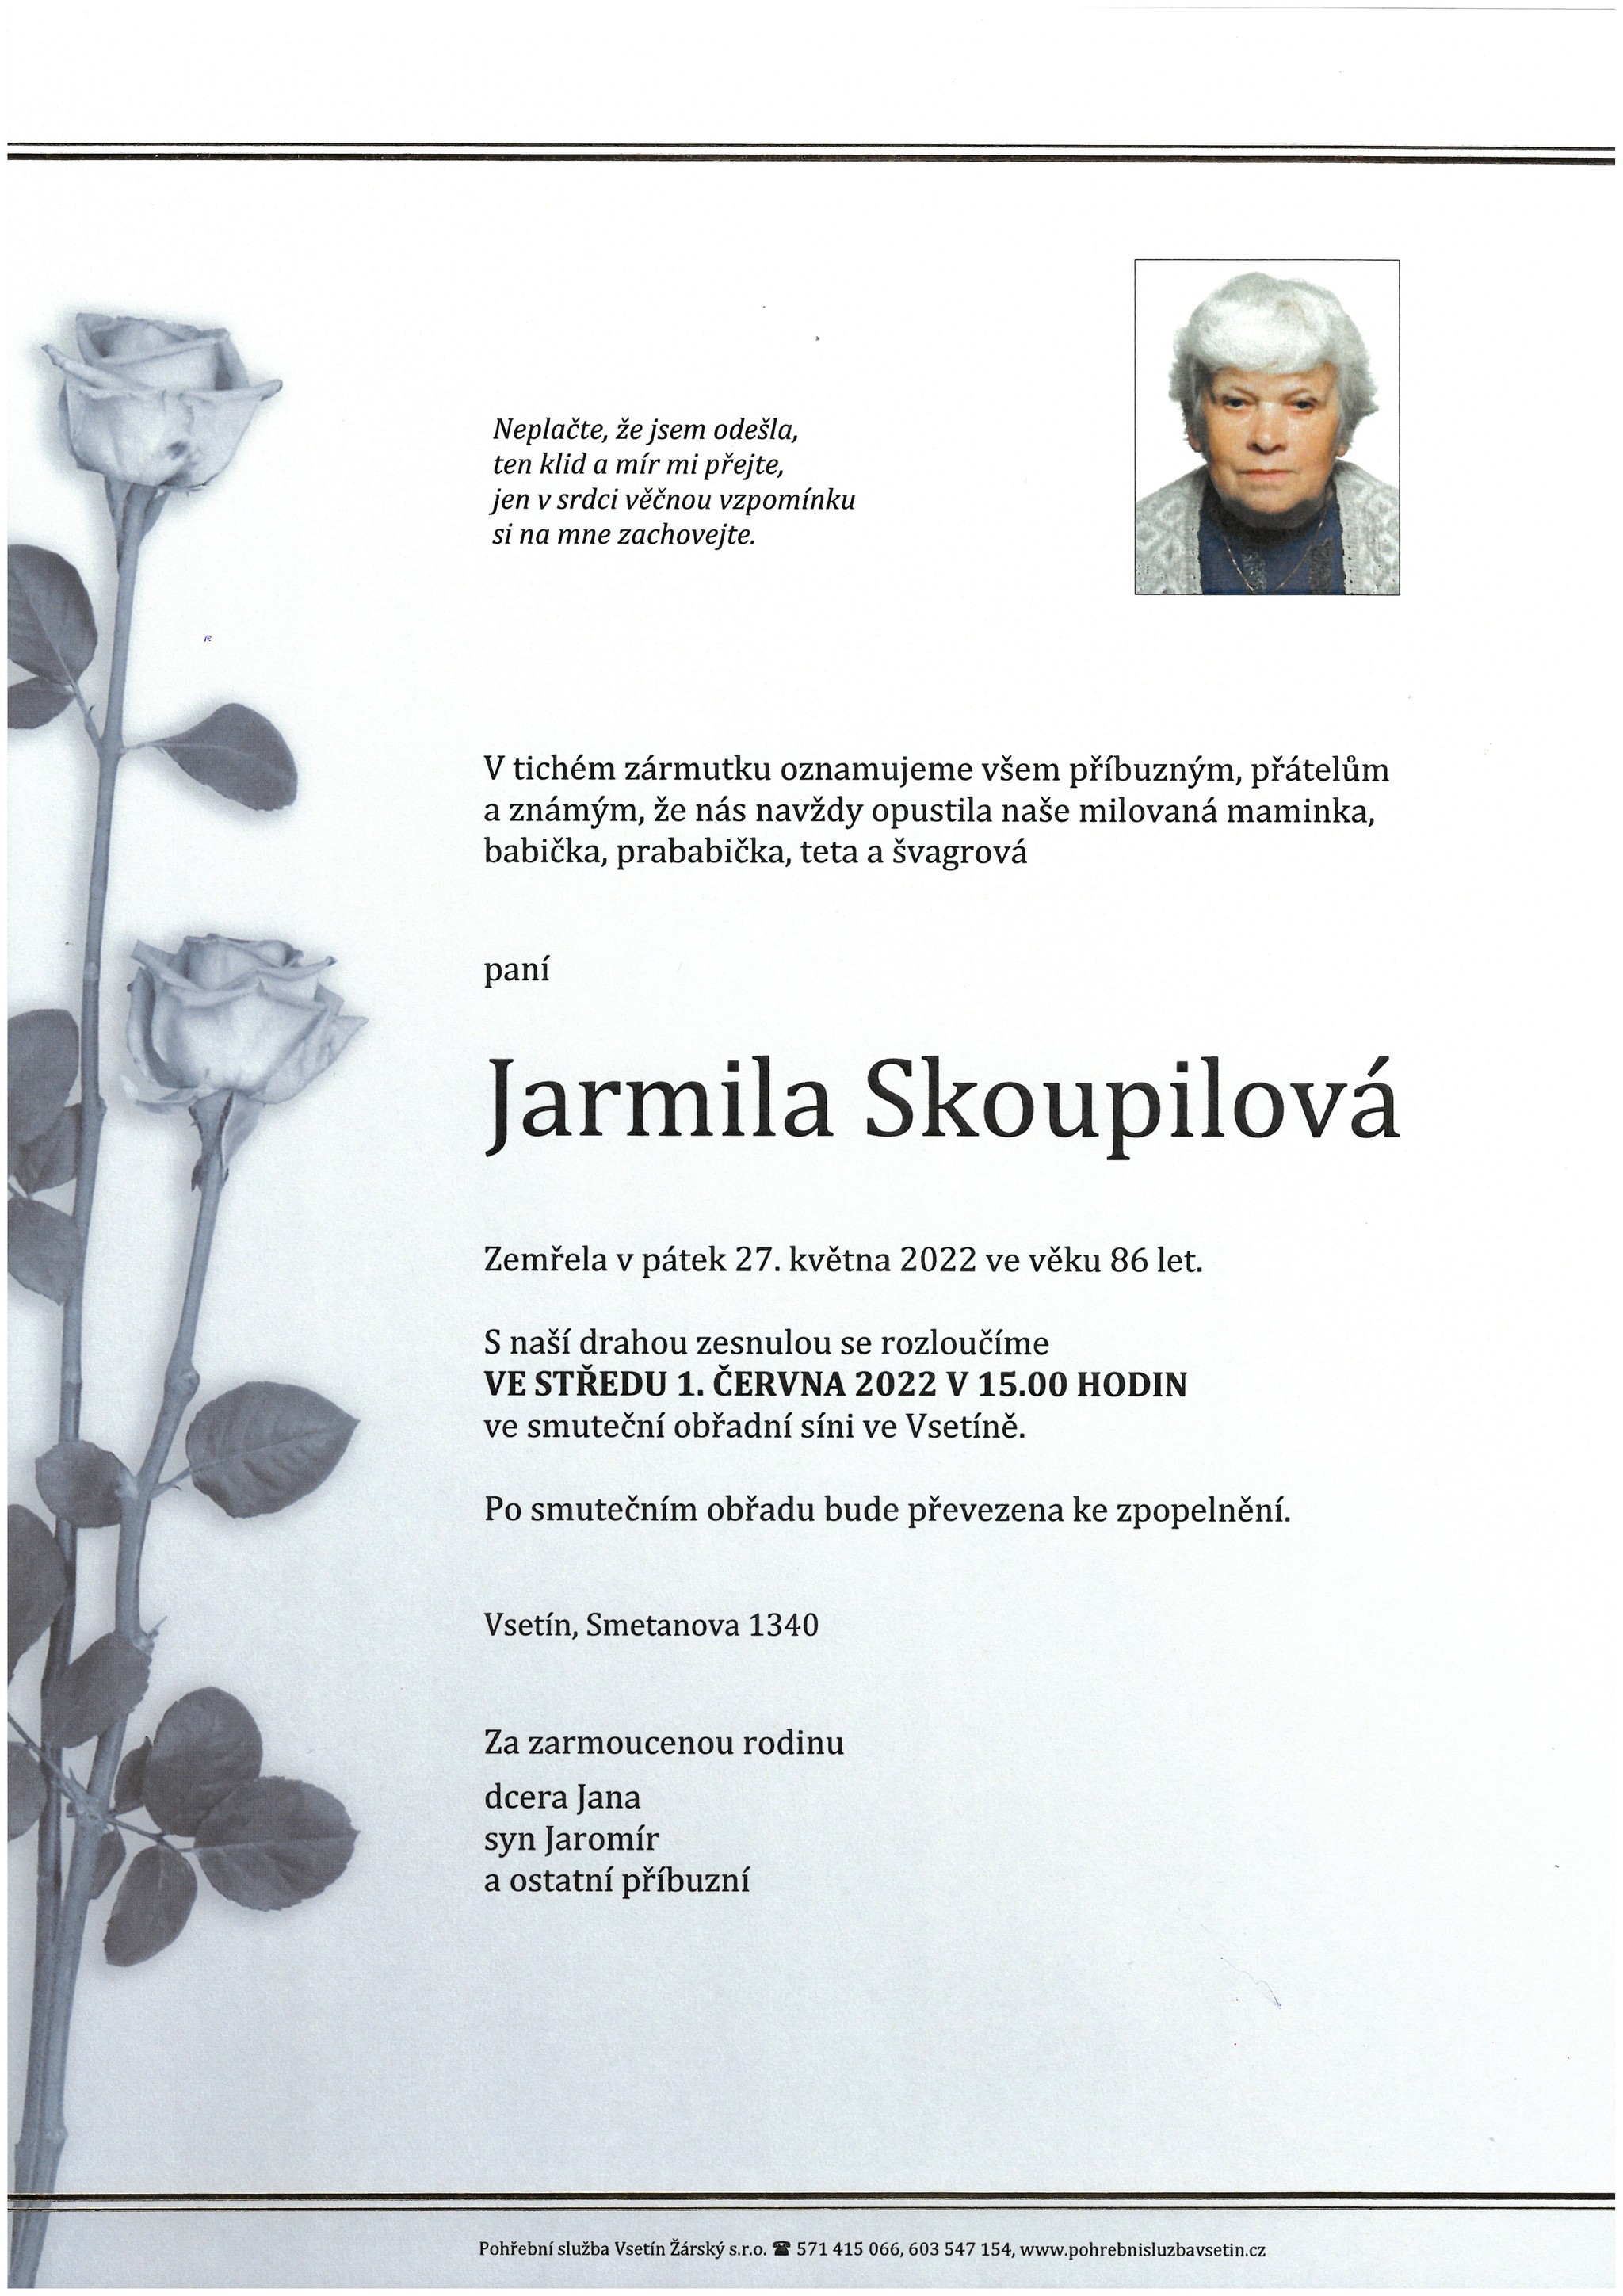 Jarmila Skoupilová